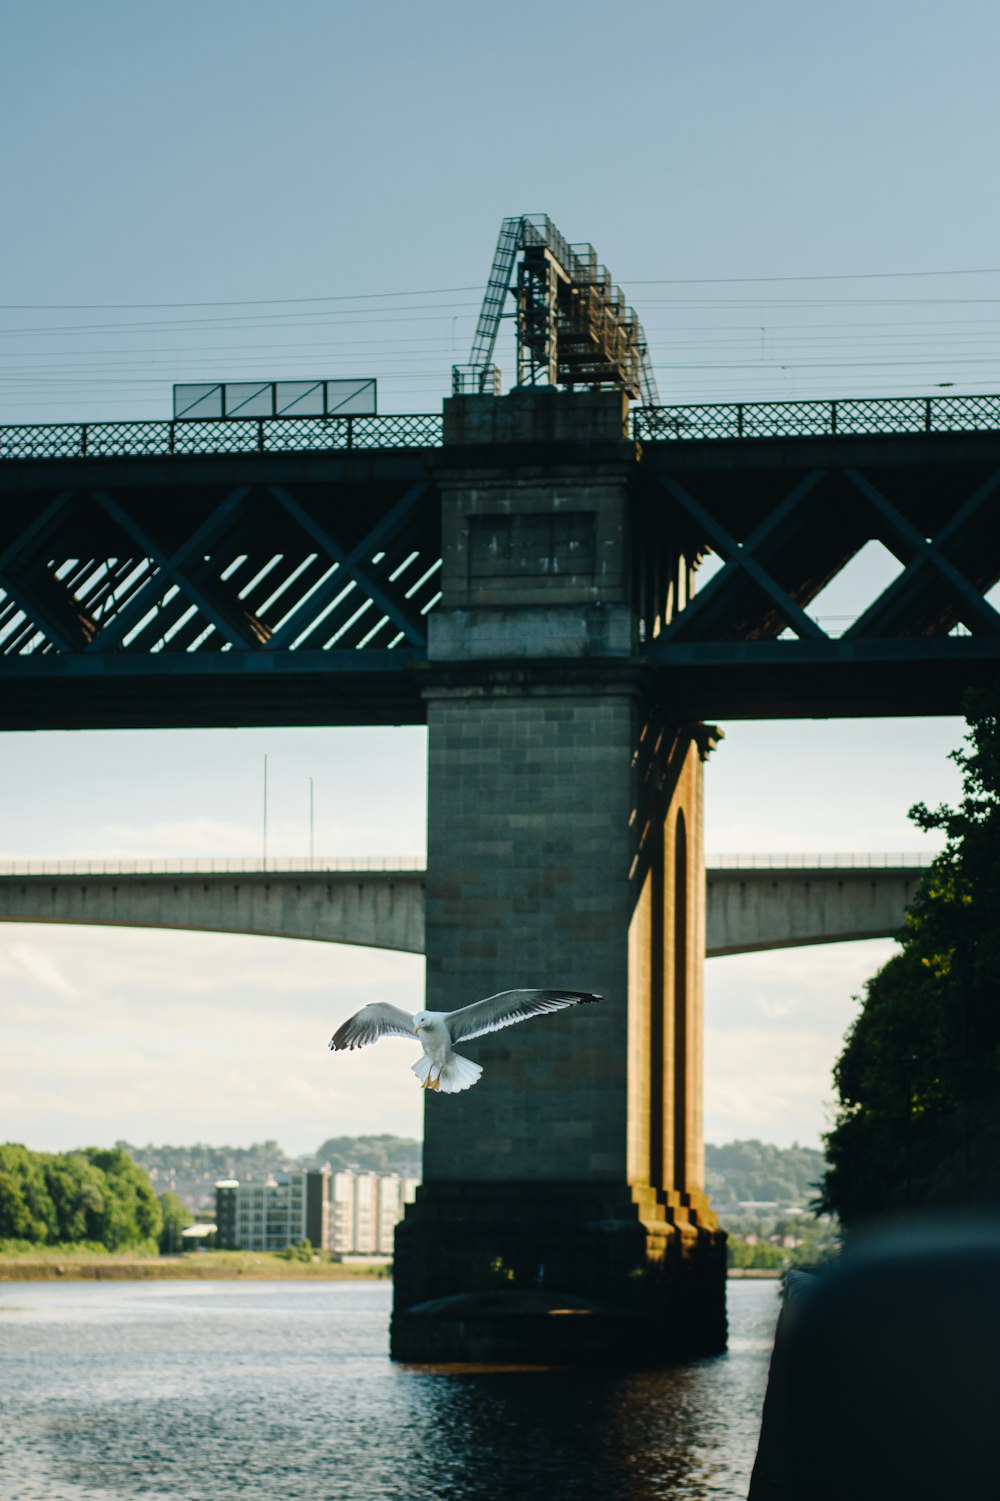 white bird flying over the bridge